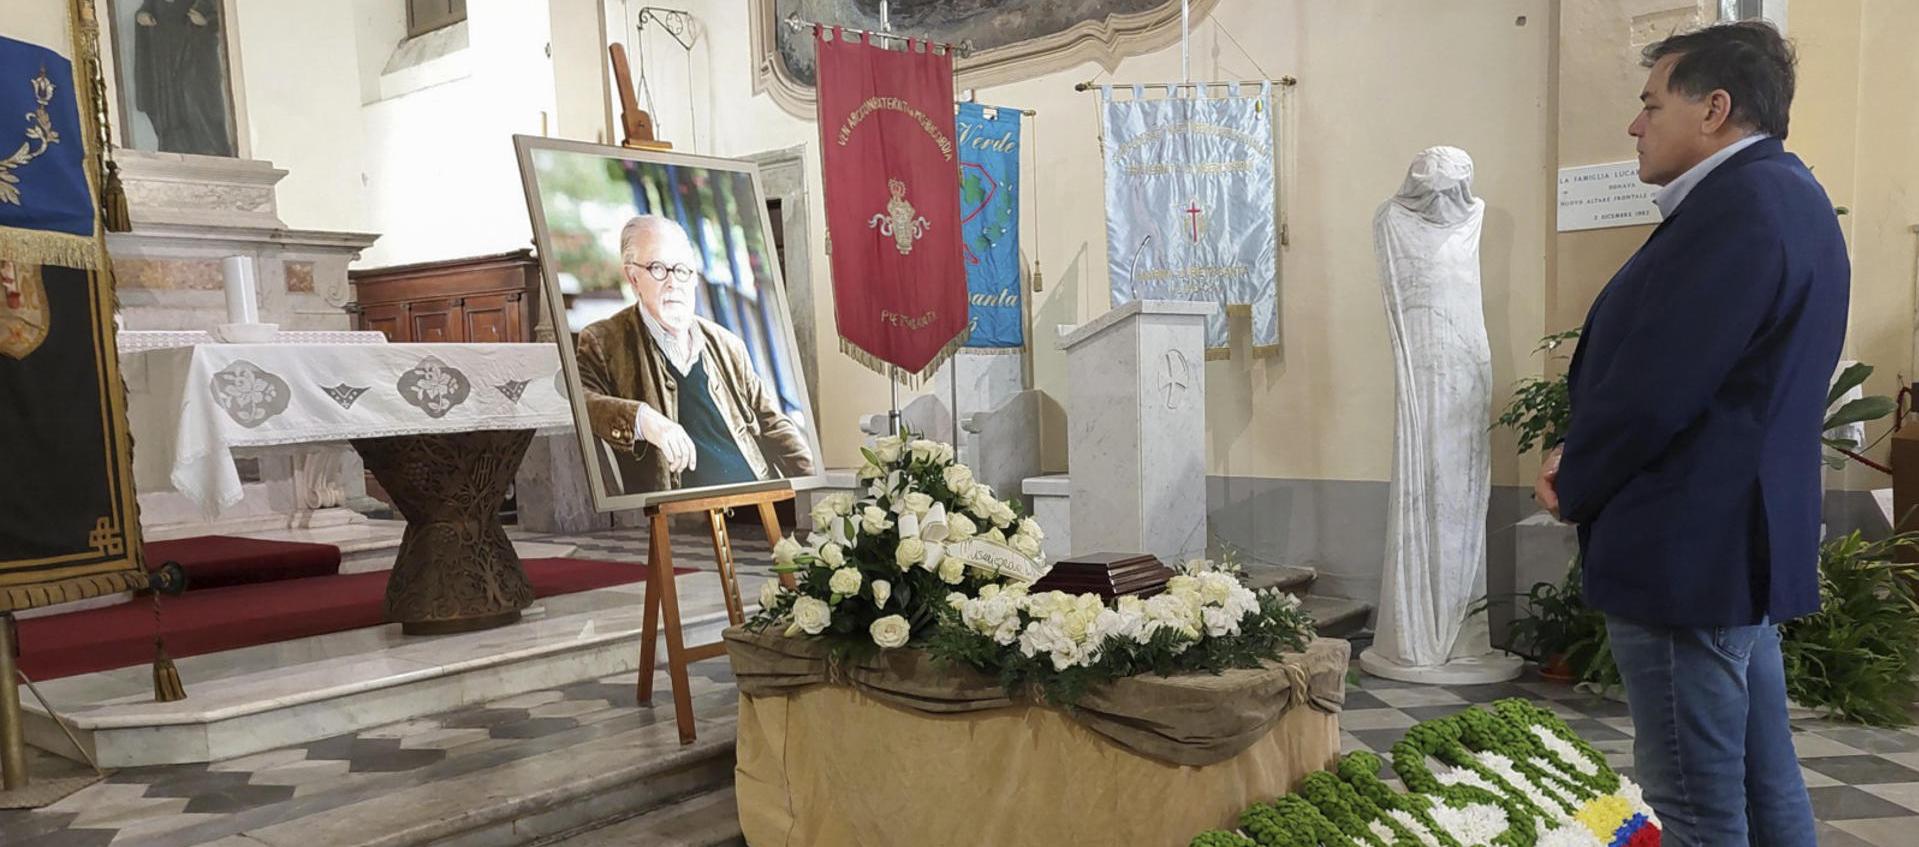 El alcalde de Pietrasanta, Alberto Stefano Giovannetti, despide las cenizas del artista Fernando Botero.